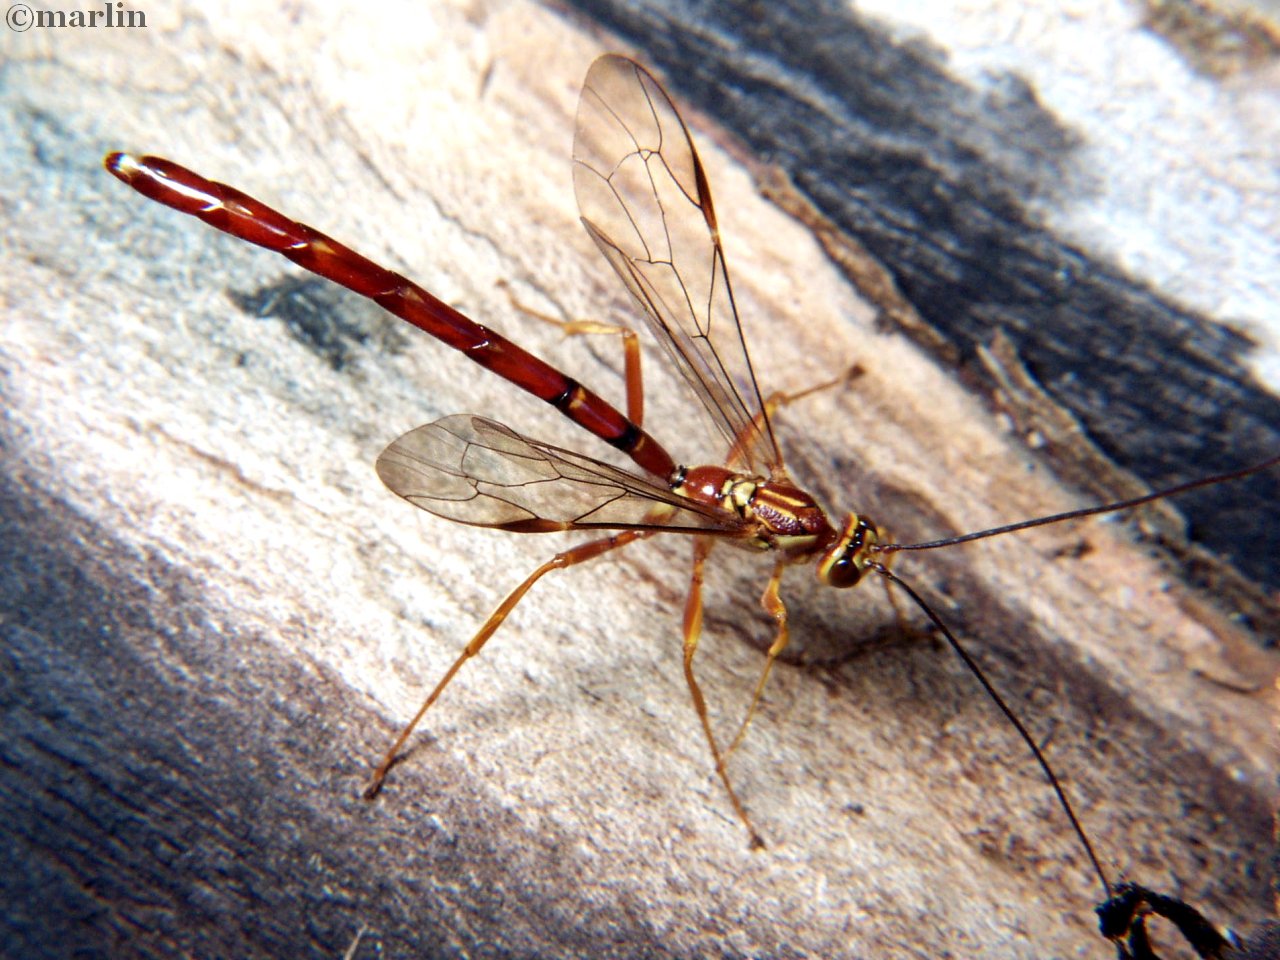 Megarhyssa male wasp